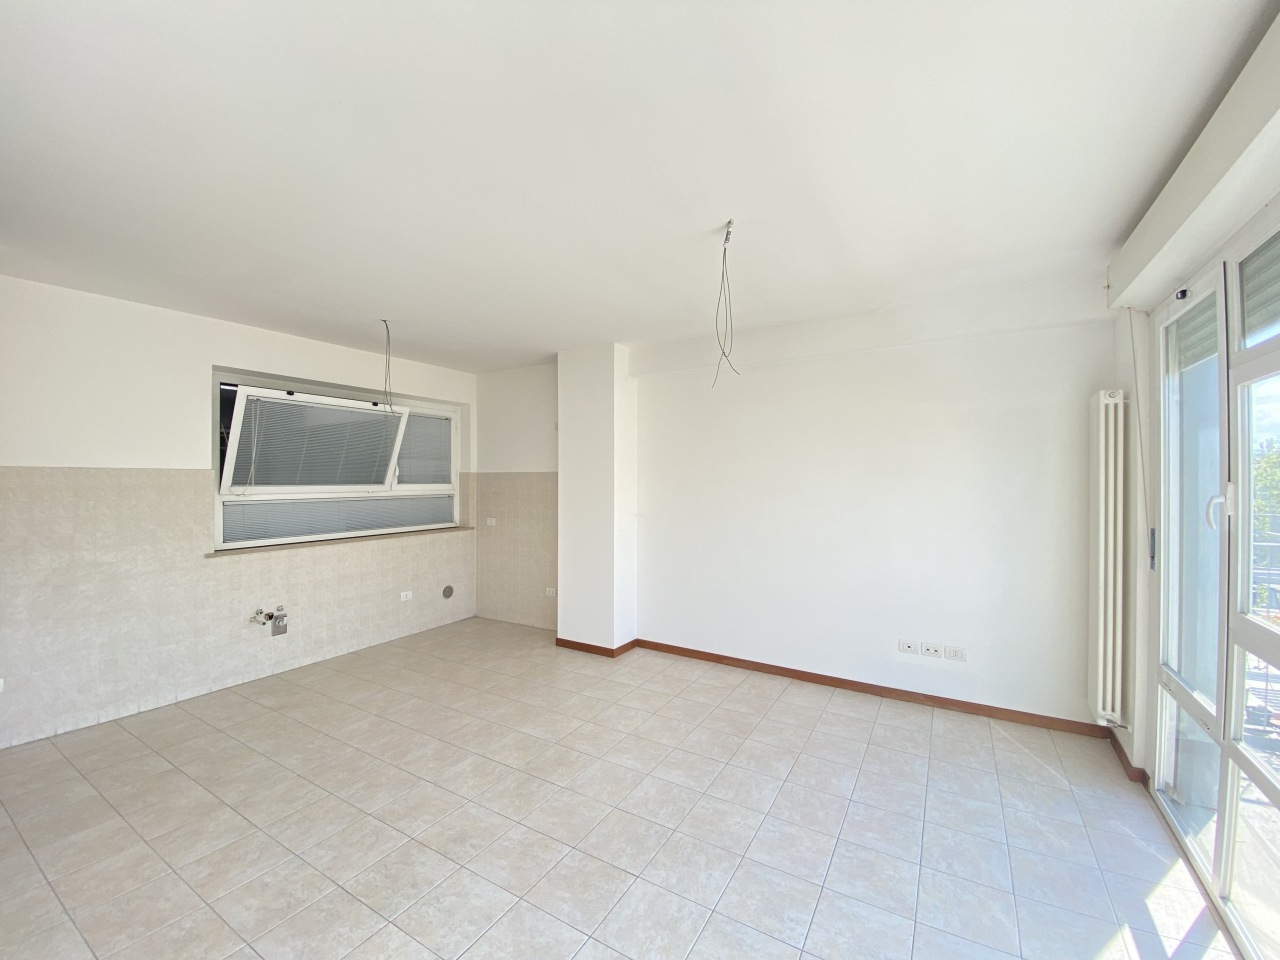 Appartamento in vendita a Jesi, 9999 locali, prezzo € 159.000 | PortaleAgenzieImmobiliari.it